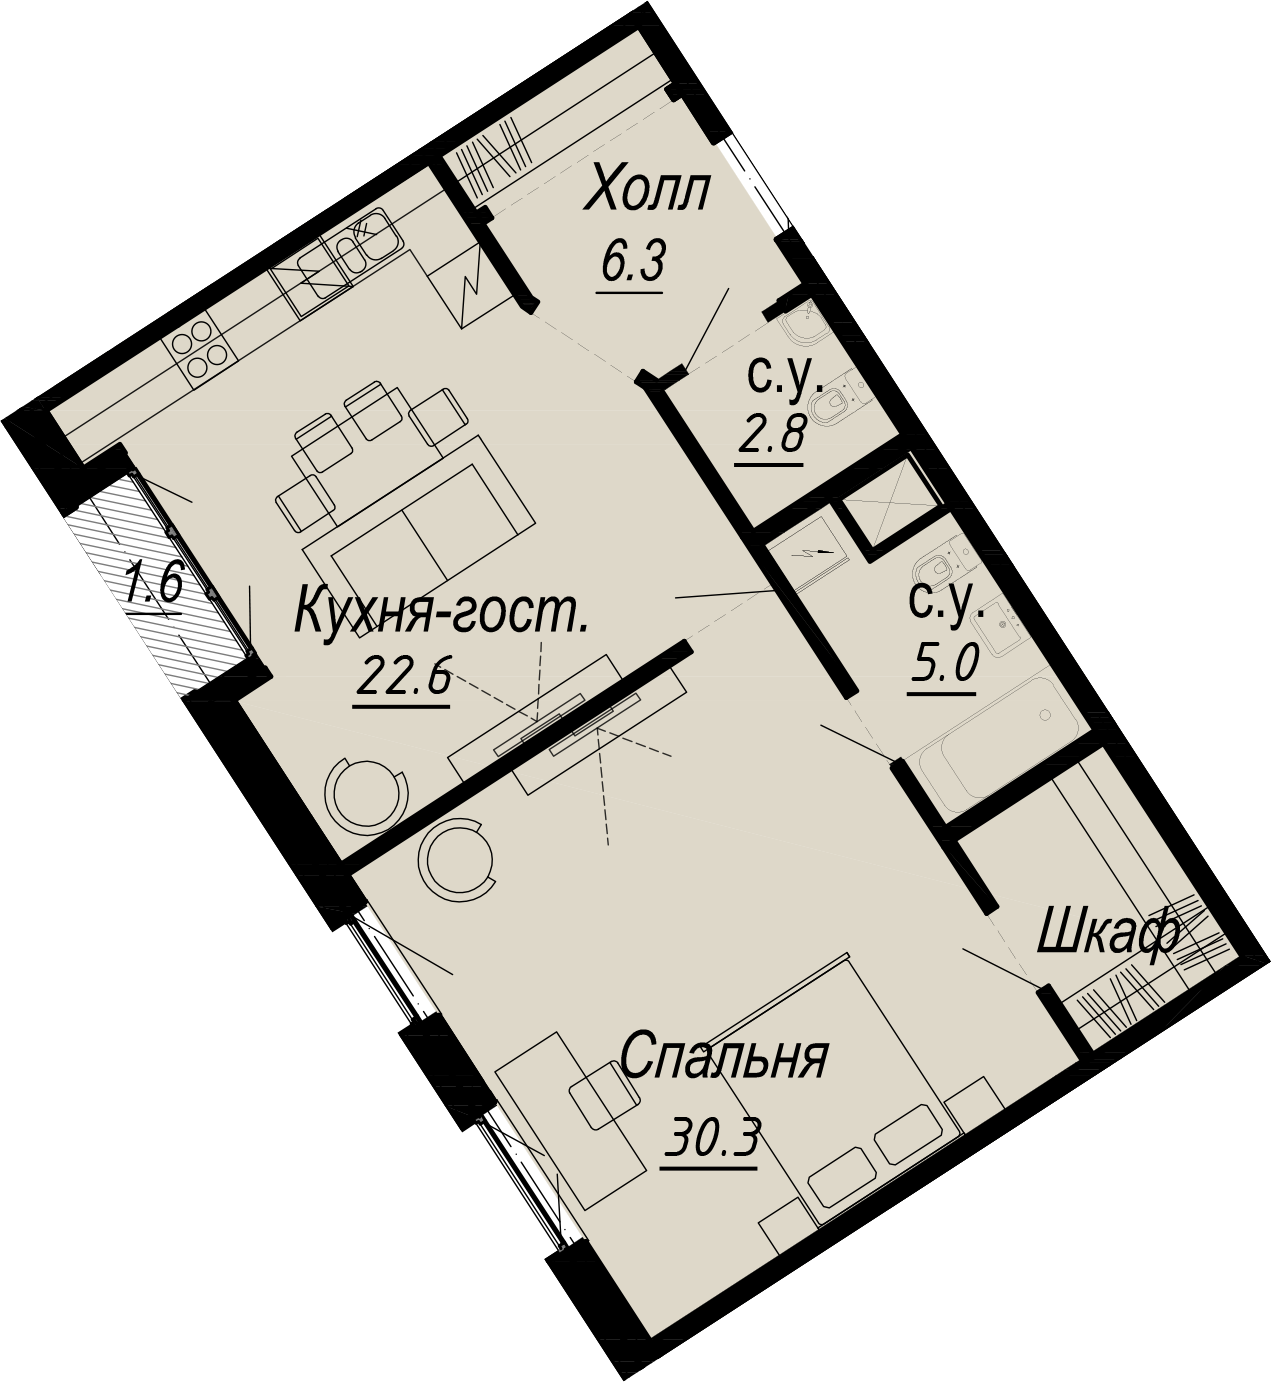 1-комнатная квартира  №3-5 в Meltzer Hall: 67 м², этаж 5 - купить в Санкт-Петербурге